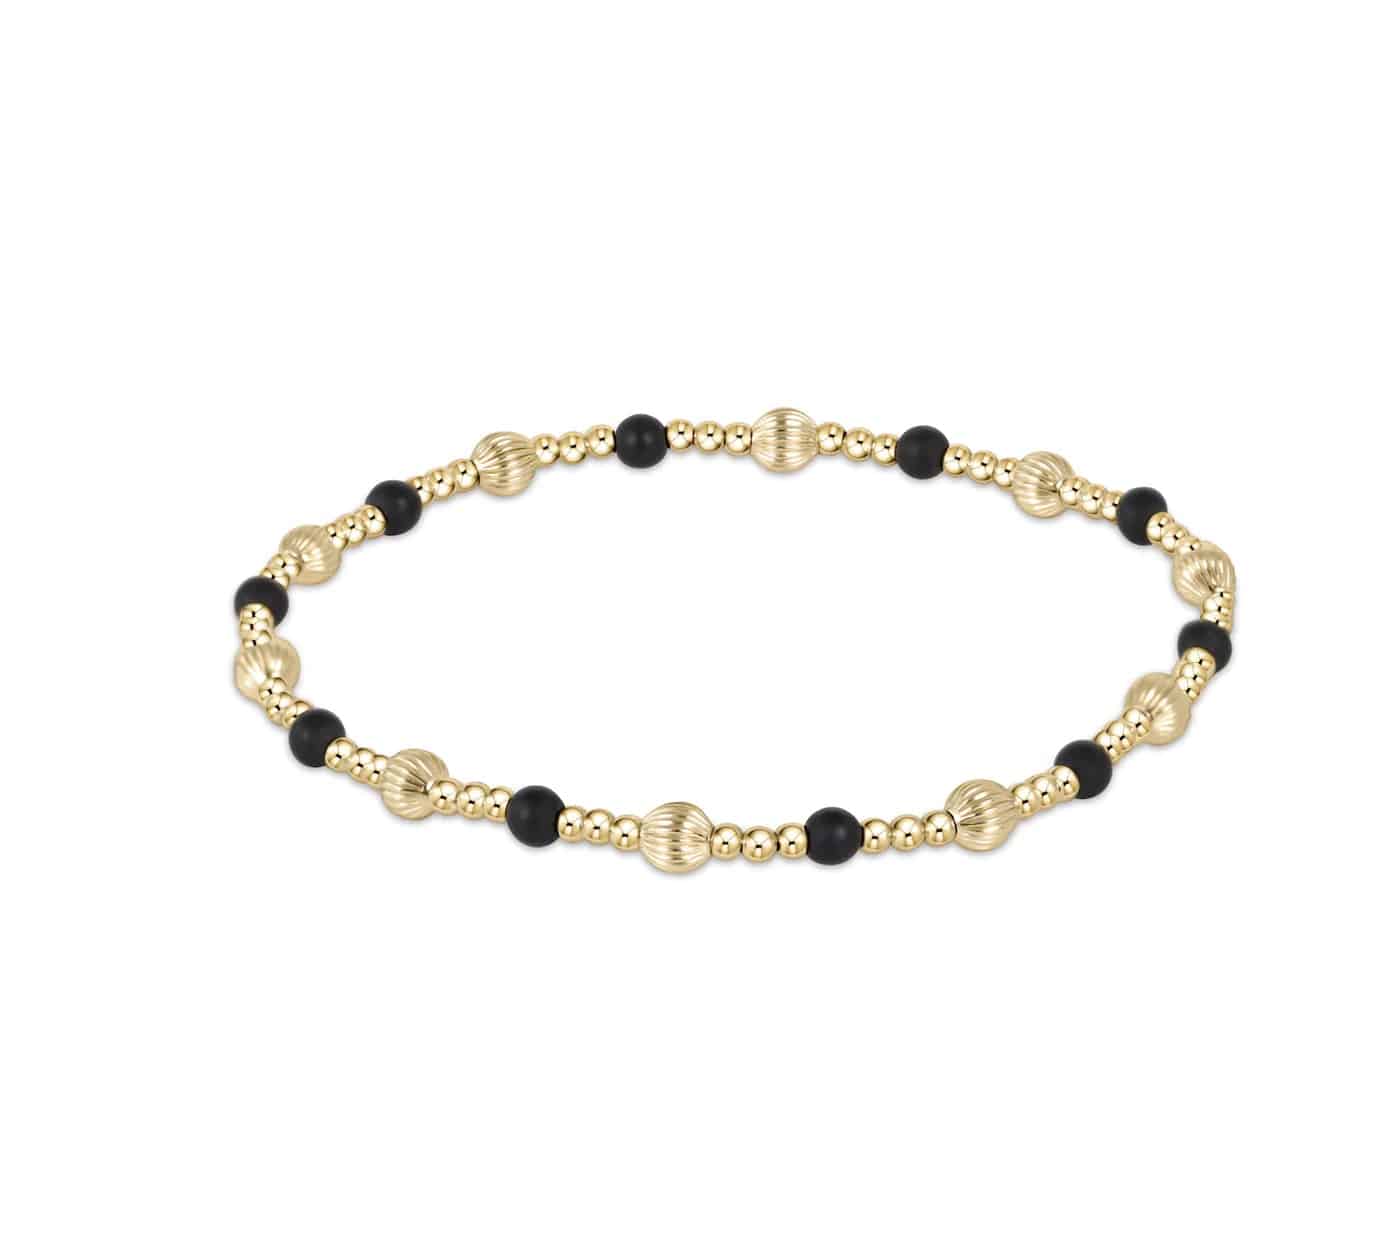 Enewton - dignity sincerity pattern 4mm bead bracelet - matte onyx